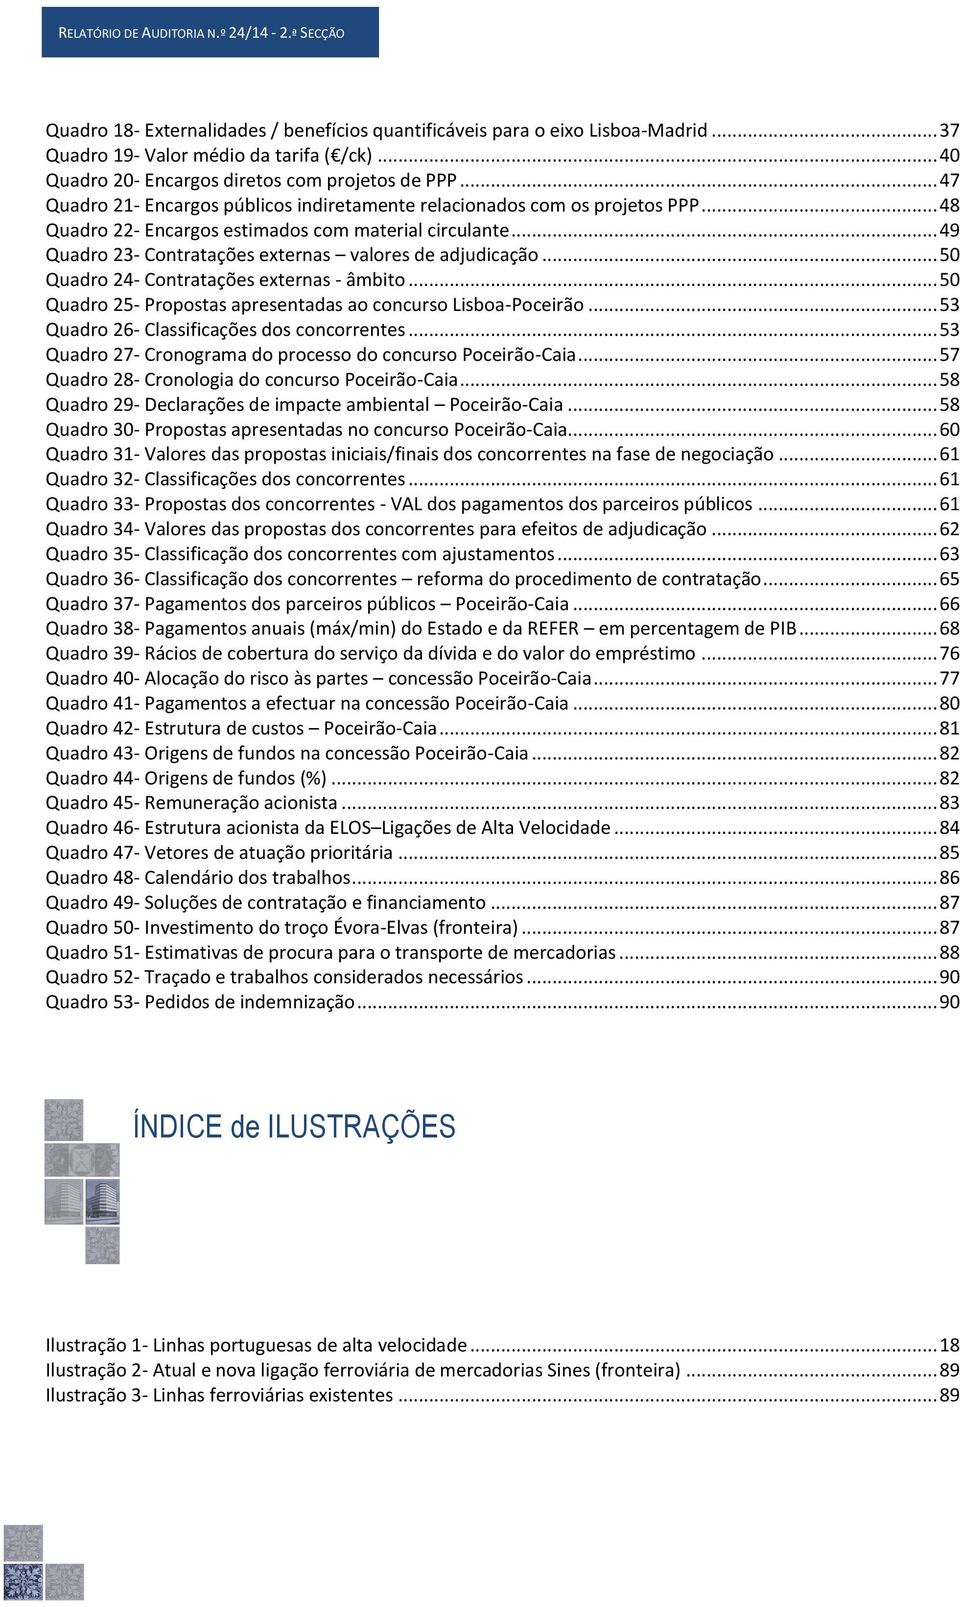 .. 49 Quadro 23- Contratações externas valores de adjudicação... 50 Quadro 24- Contratações externas - âmbito... 50 Quadro 25- Propostas apresentadas ao concurso Lisboa-Poceirão.